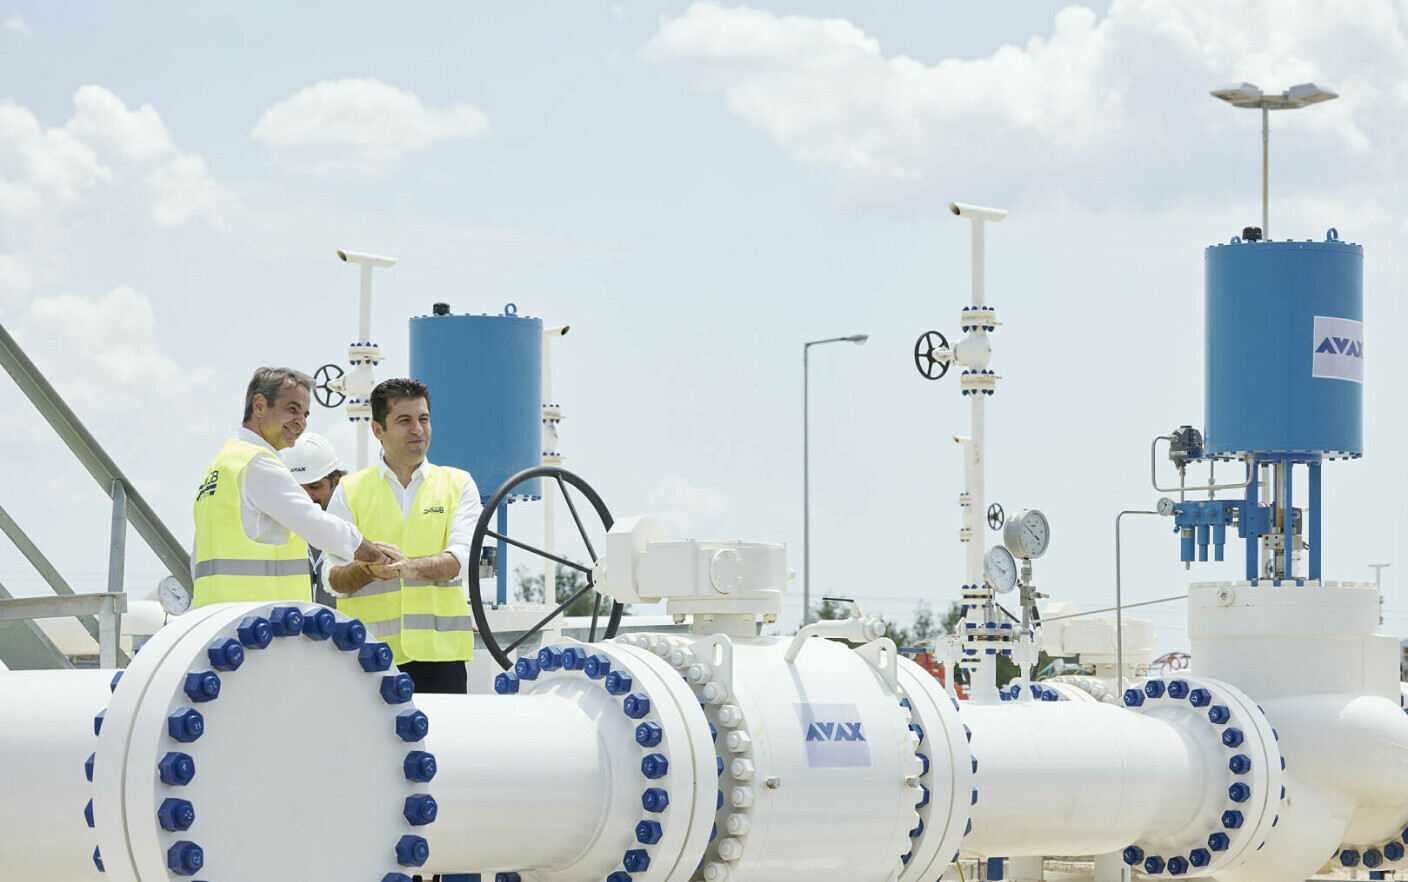 Ελλάδα και Βουλγαρία εγκαινίασαν τον αγωγό φυσικού αερίου μέσω του οποίου θα προμηθεύονται φυσικό αέριο από το Αζερμπαϊτζάν